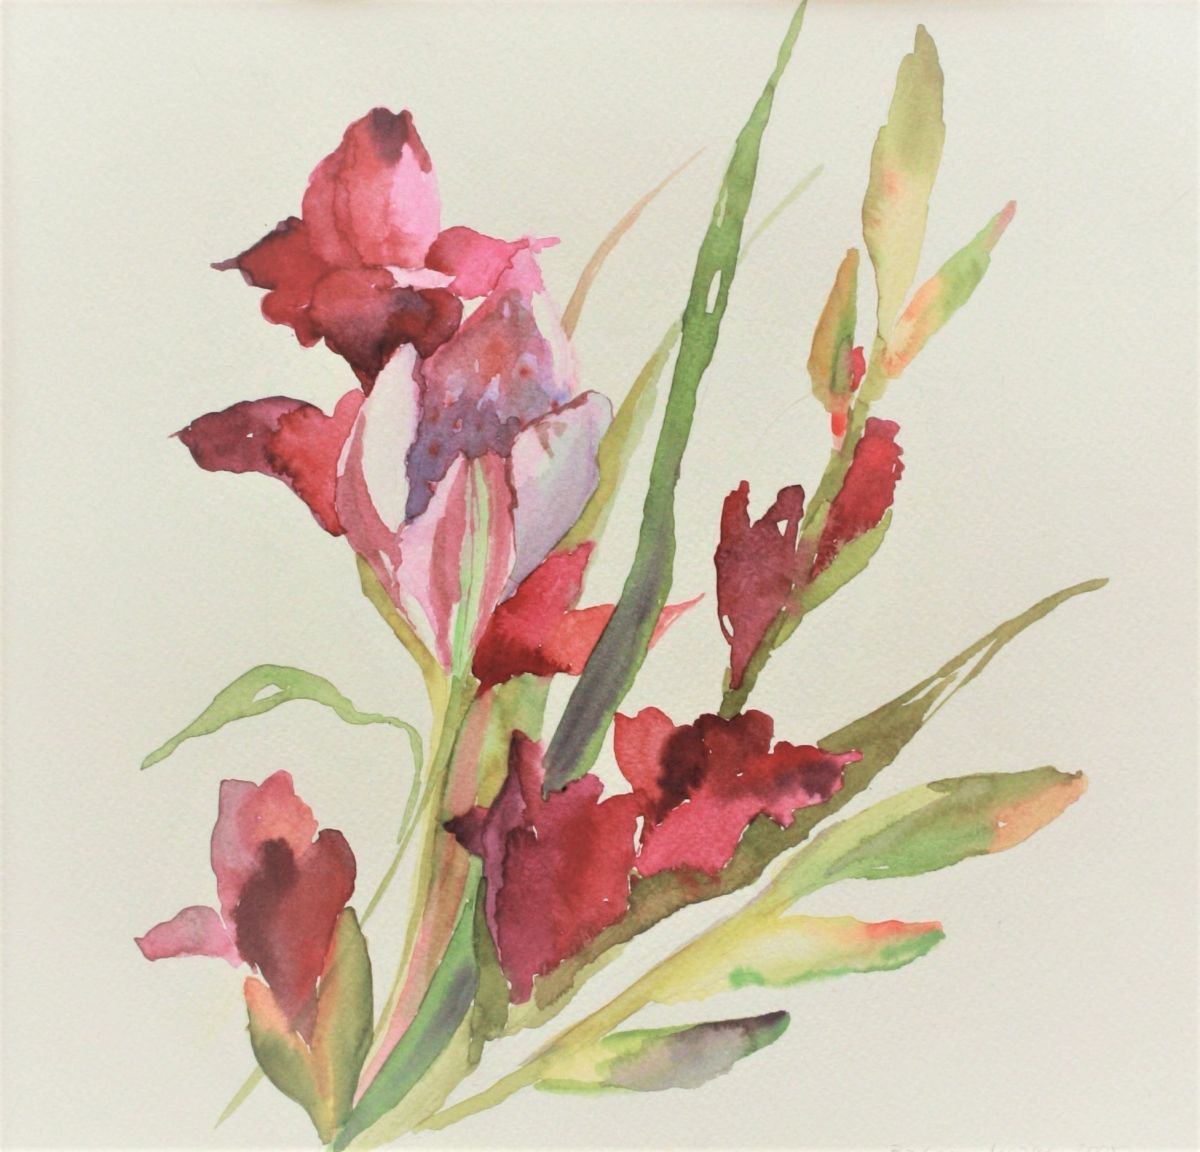 gladiola flowers by Barbara Mazur